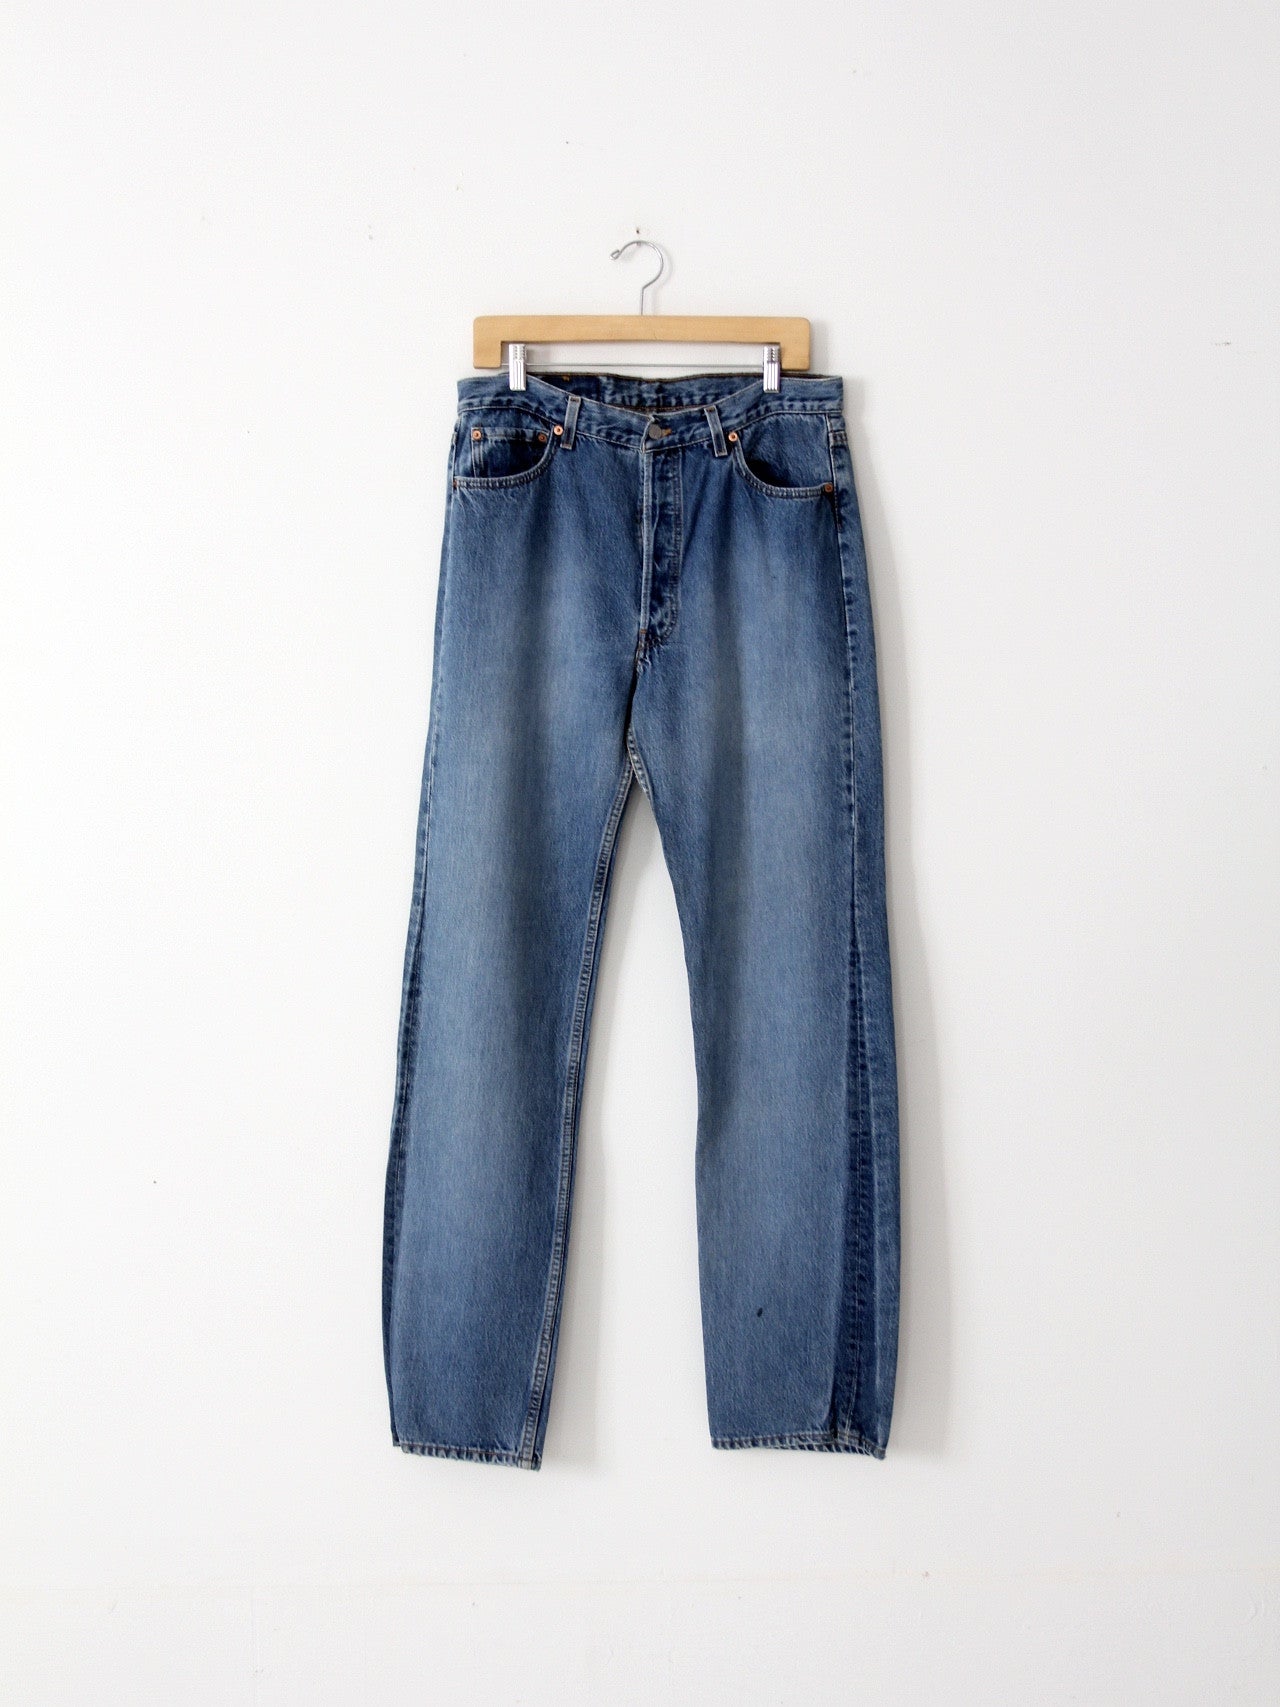 vintage 501xx Levi's jeans, 34 x 30 – 86 Vintage